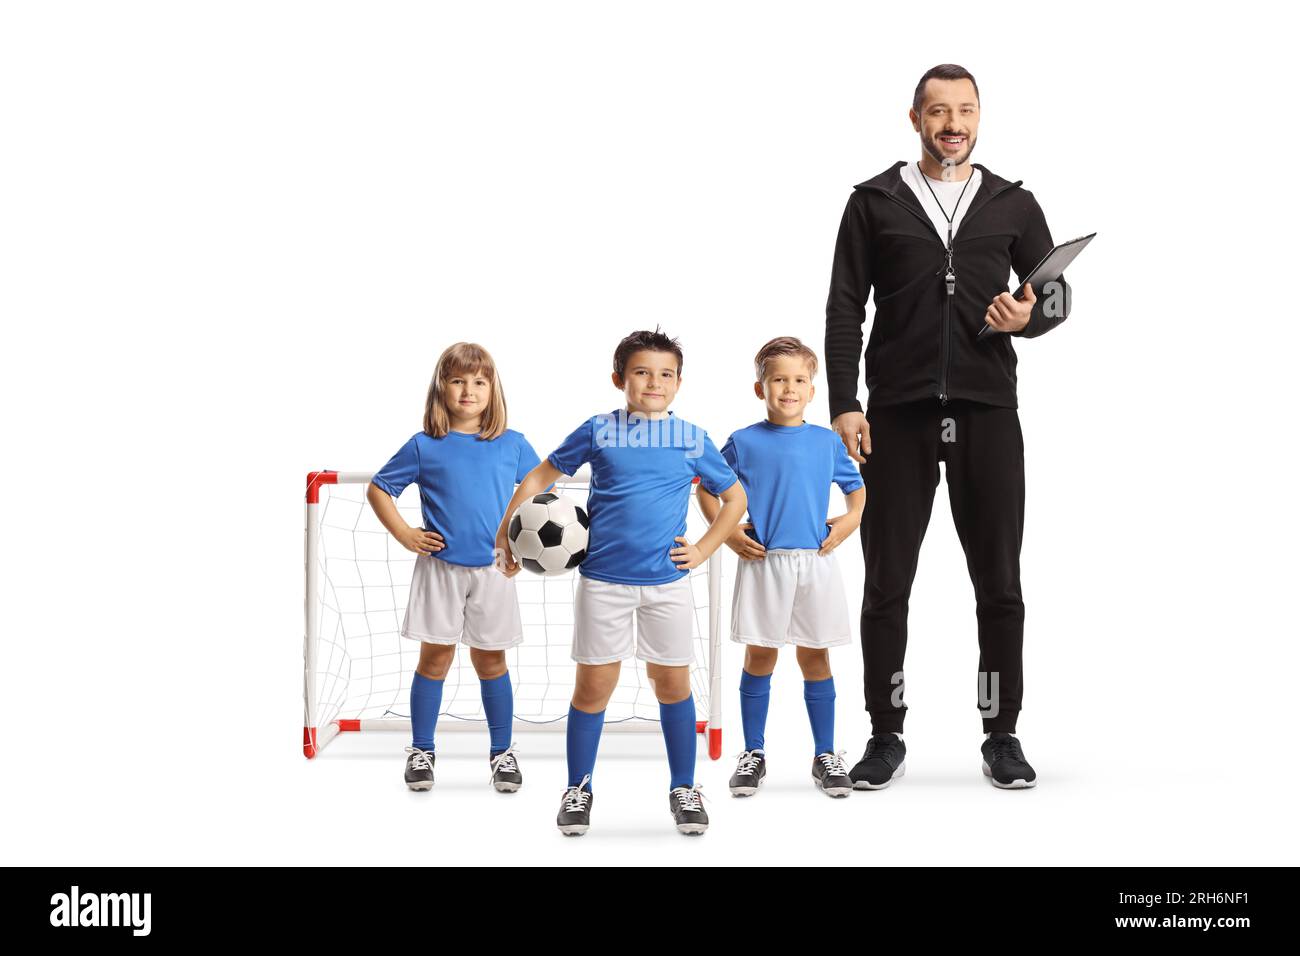 Groupe d'enfants posant avec un entraîneur de football isolé sur fond blanc Banque D'Images